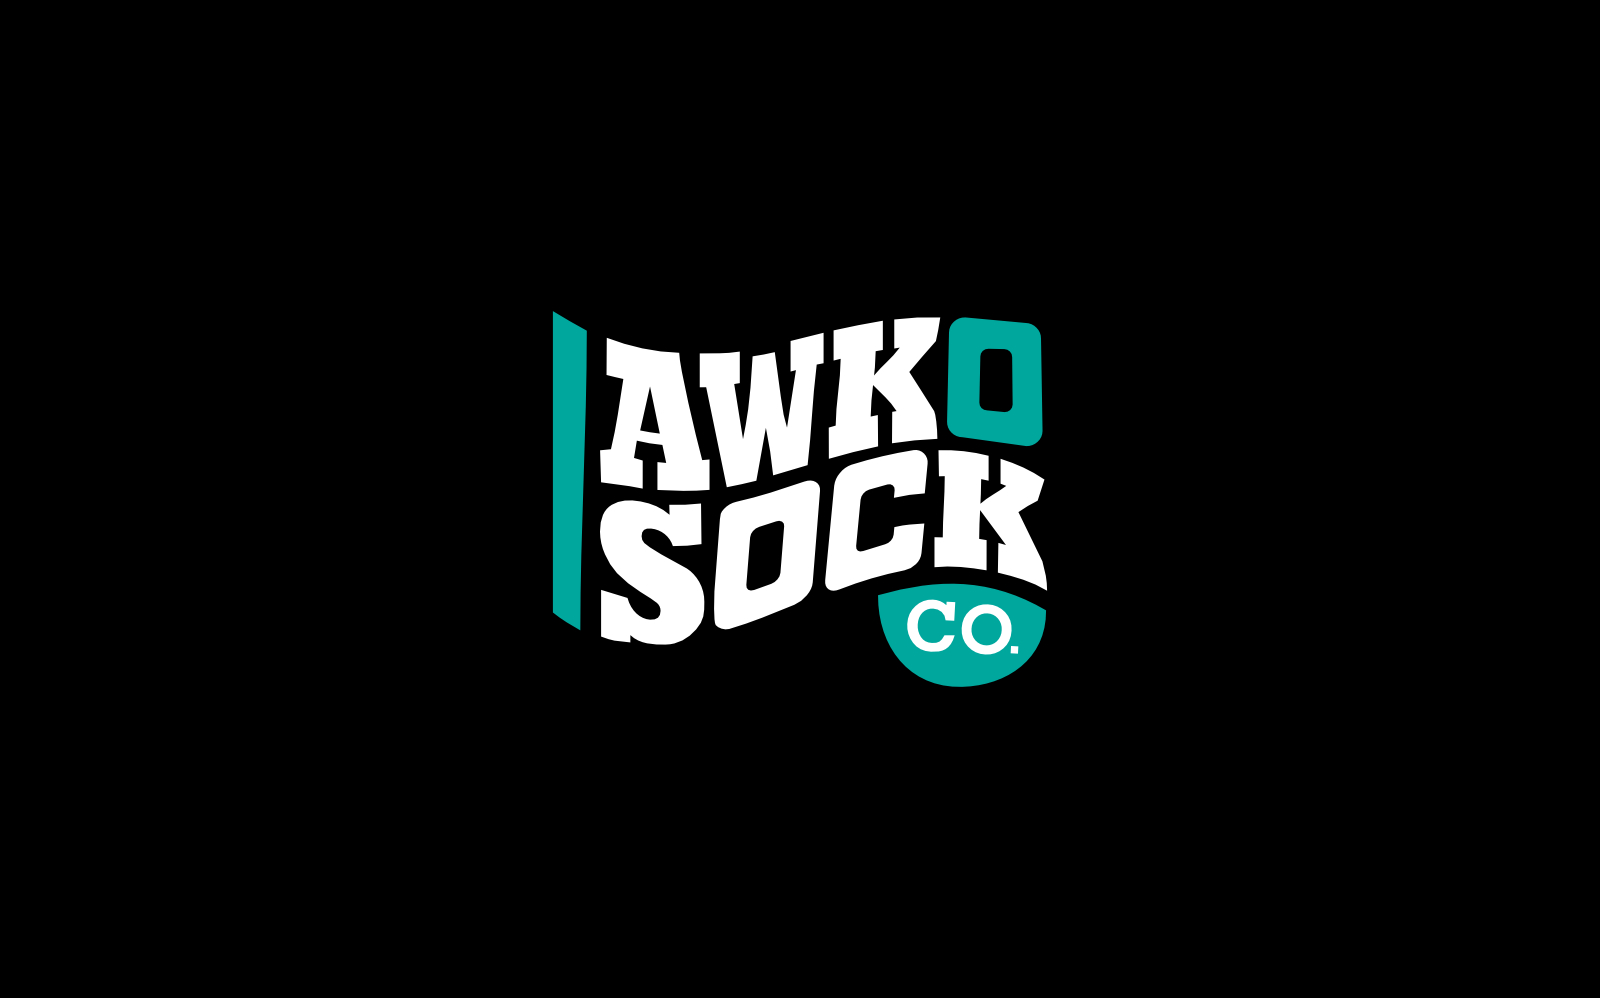 Awko Sock Co.